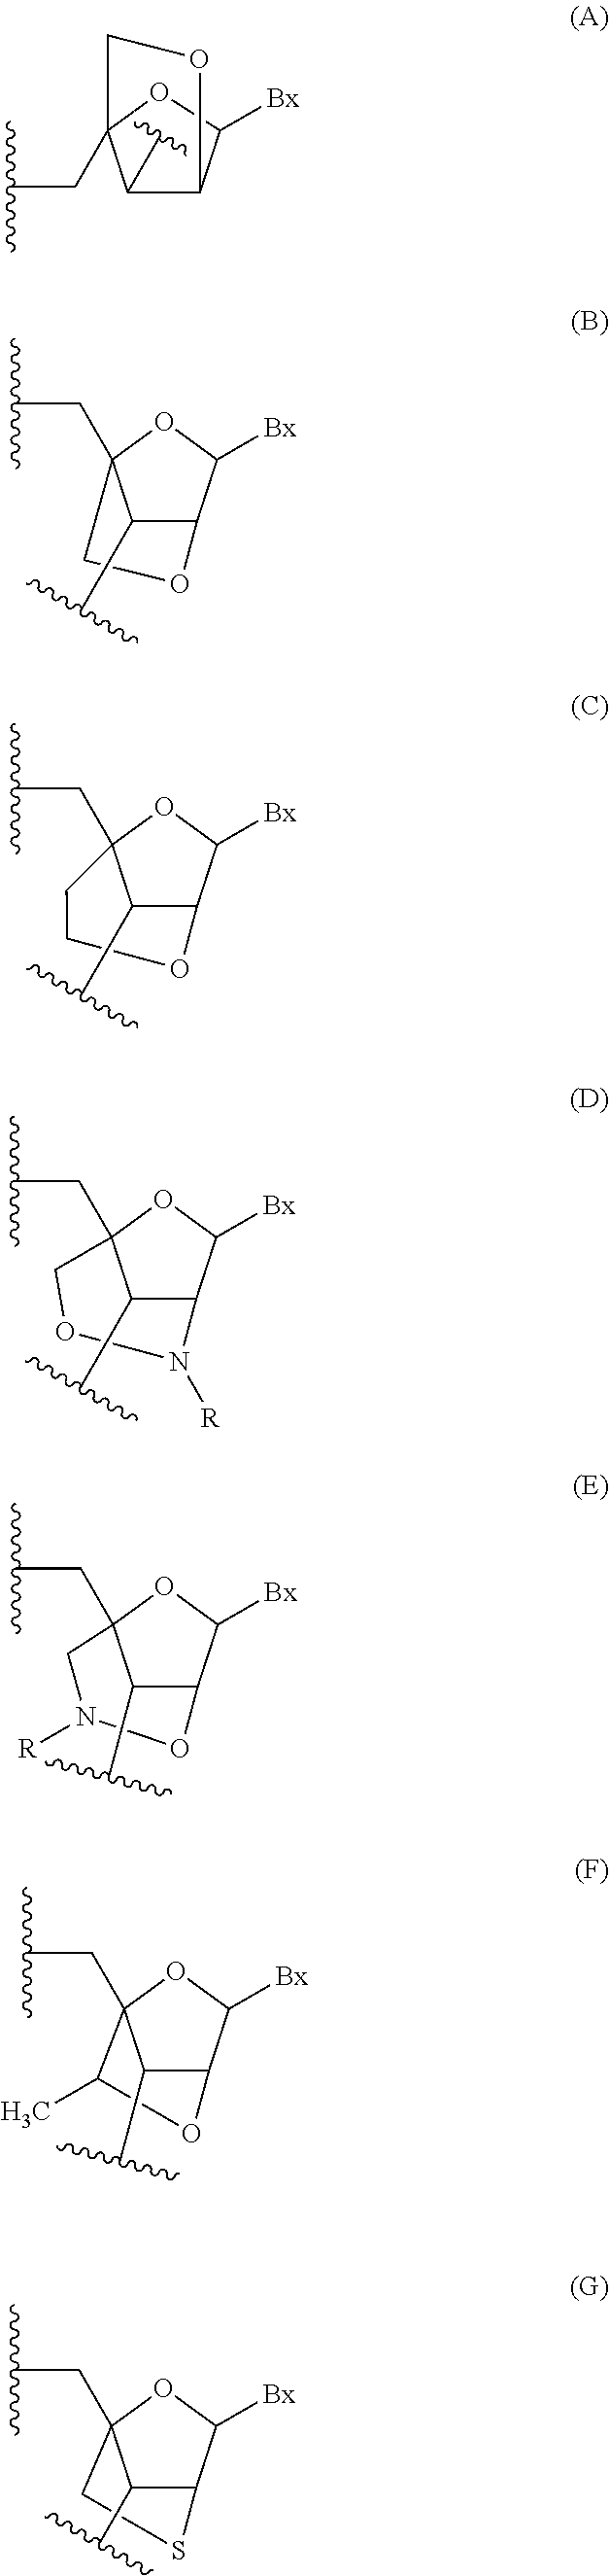 Modulation of apolipoprotein ciii (apociii) expression